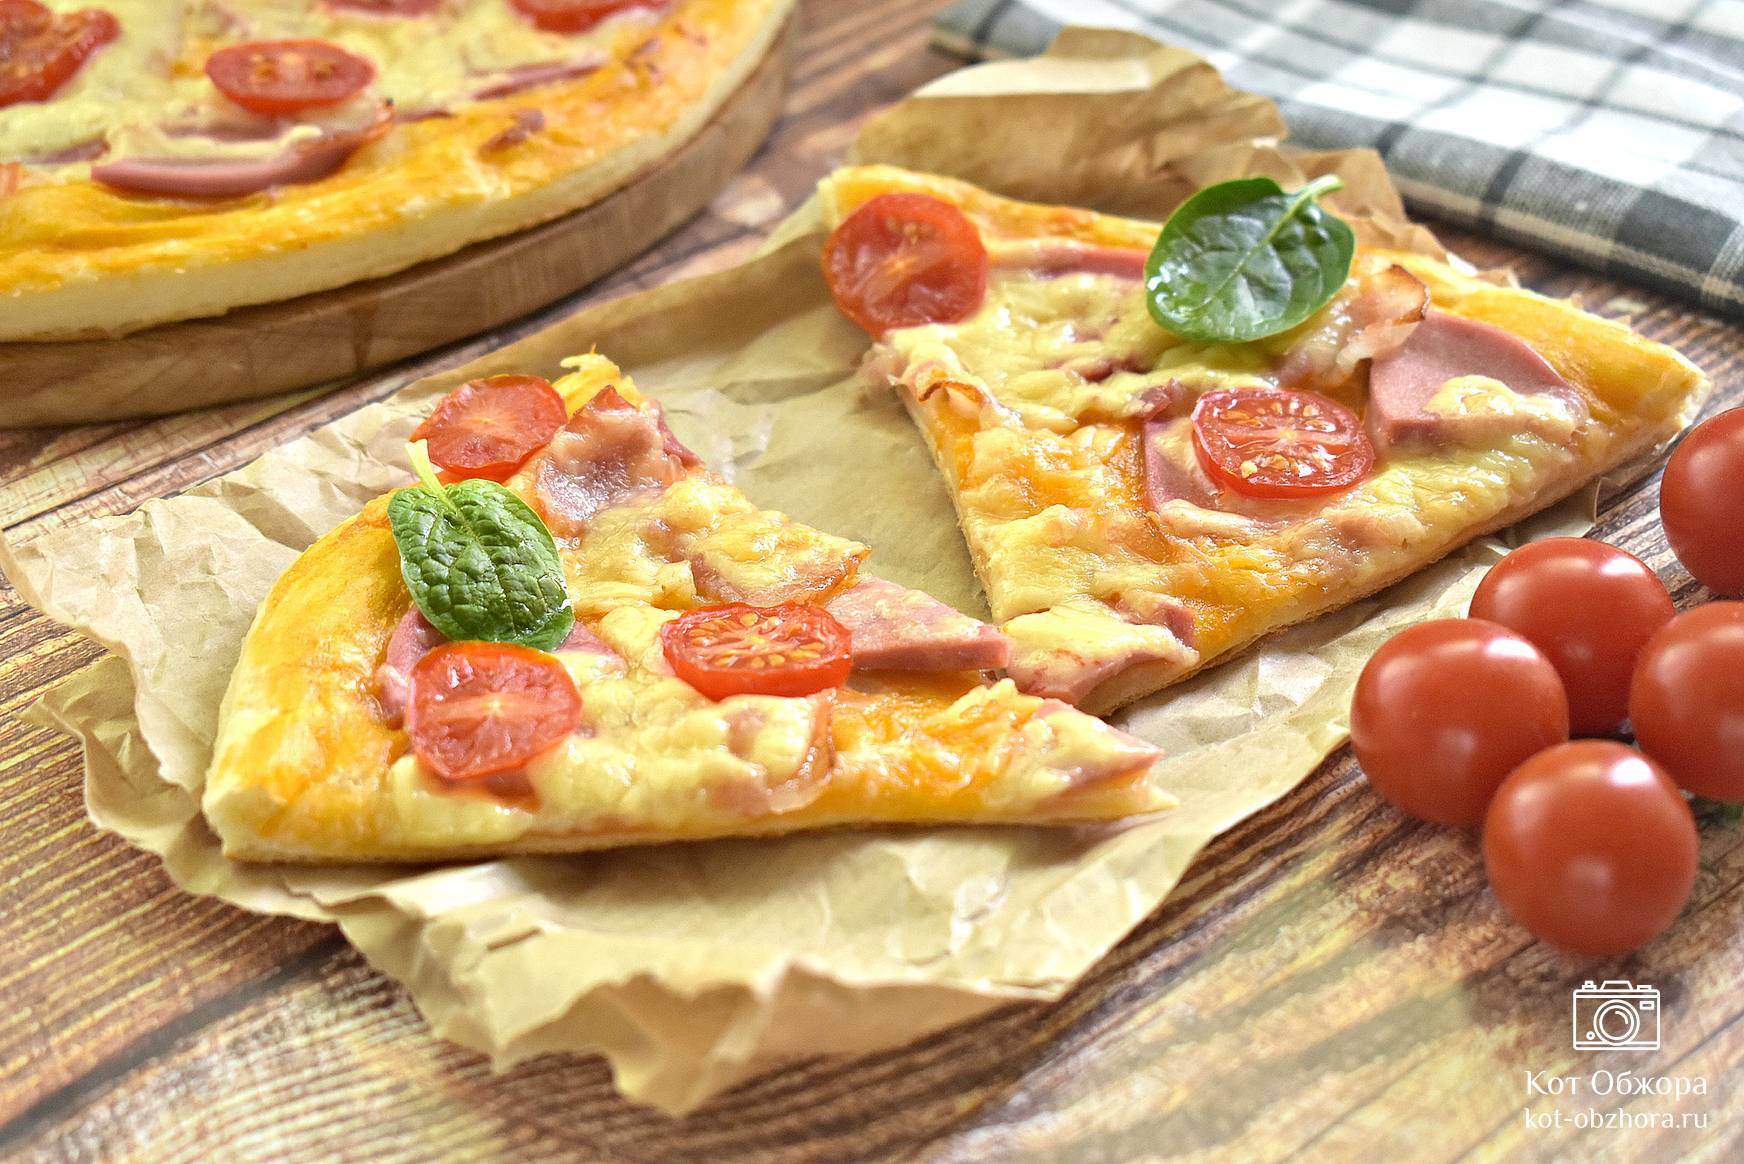 Пошаговый рецепт с фото пиццы на слоеном тесте с колбасой салями, перцем, помидорами и сыром